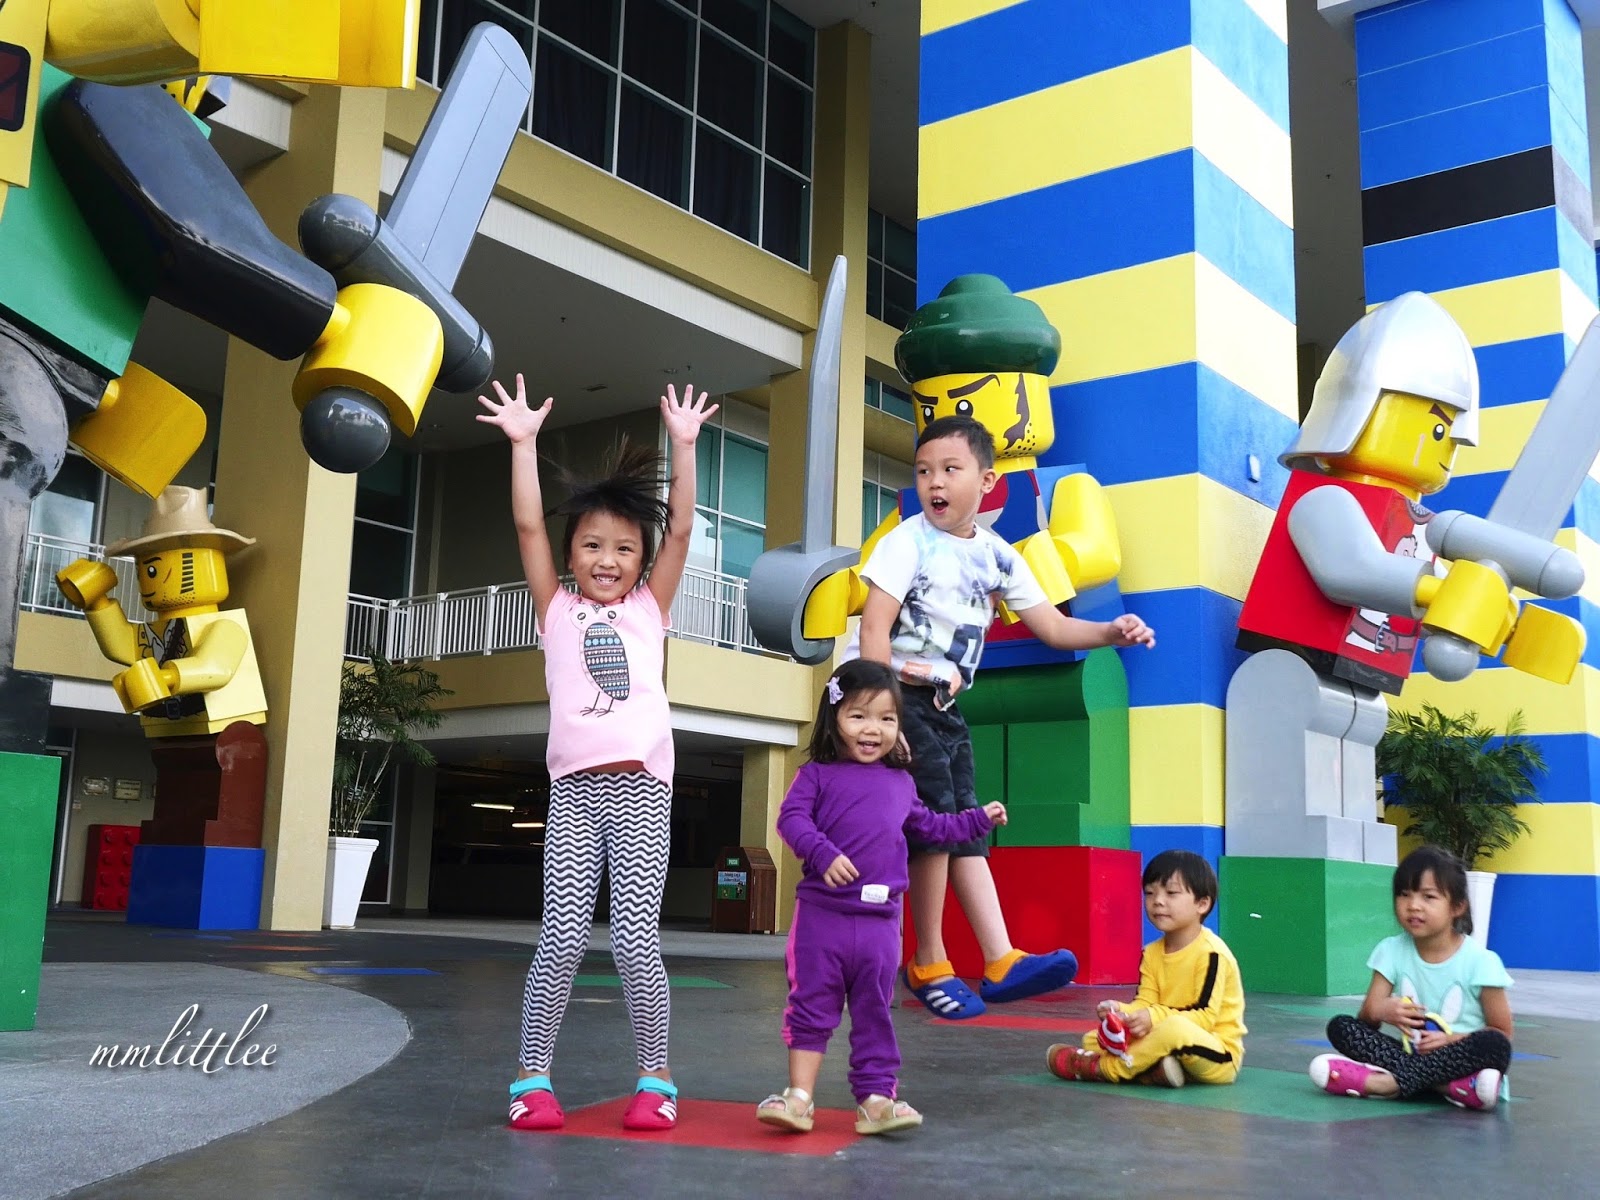 Legoland Malaysia Hotel: Adventure Vs. Kingdom Vs. Pirate